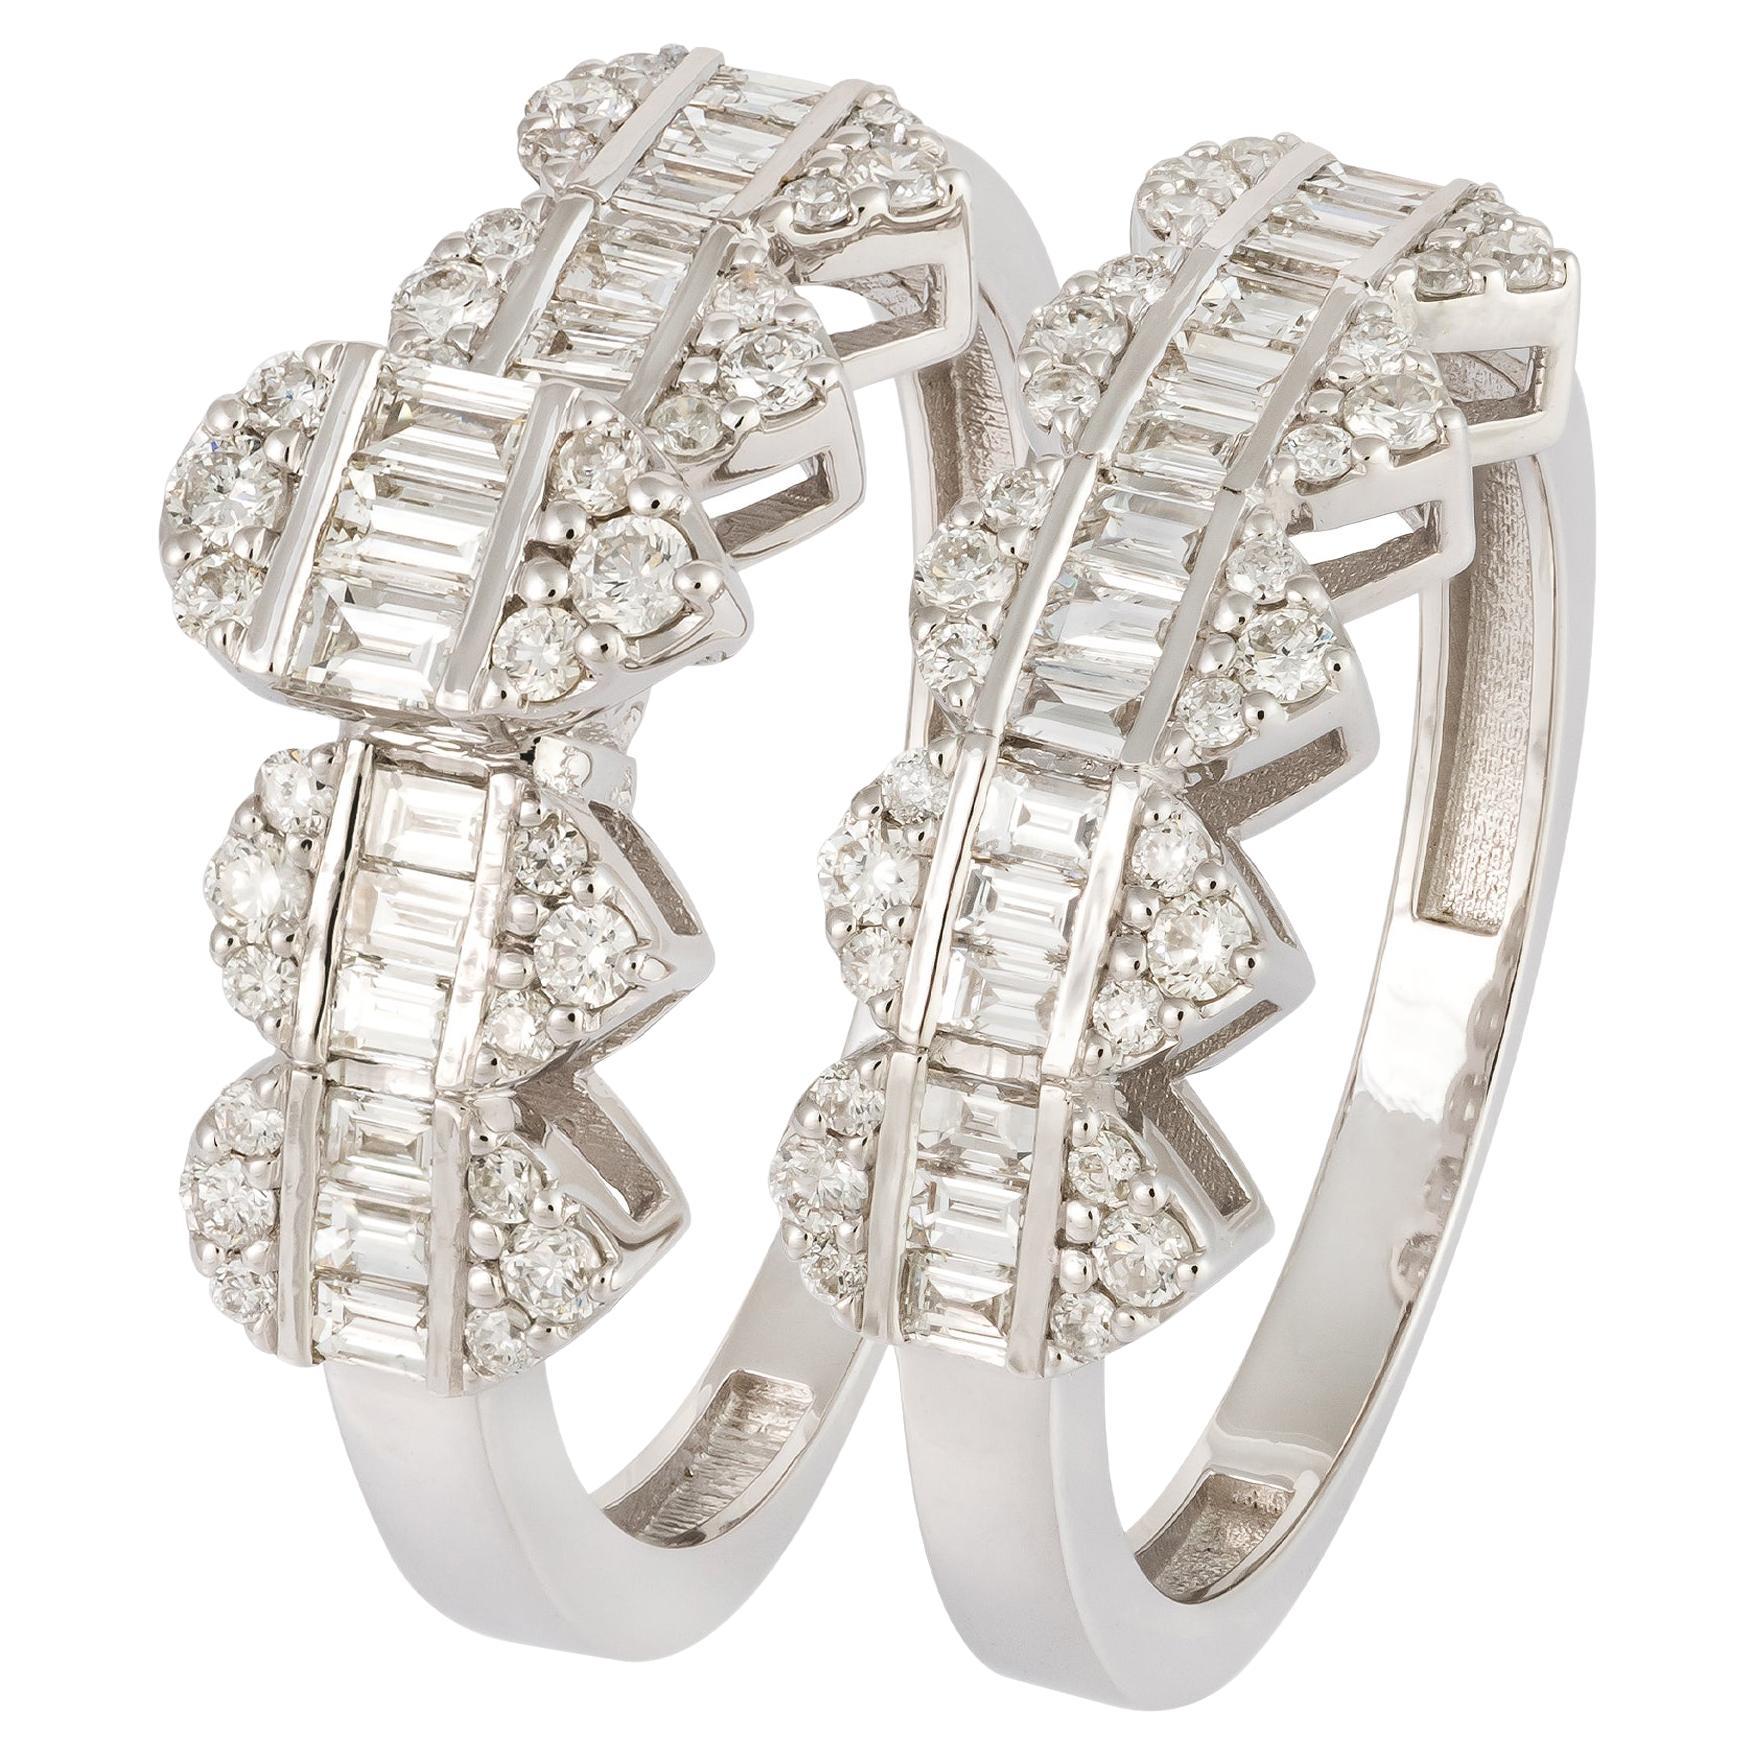 Stunning White 18K Gold White Diamond Ring For Her